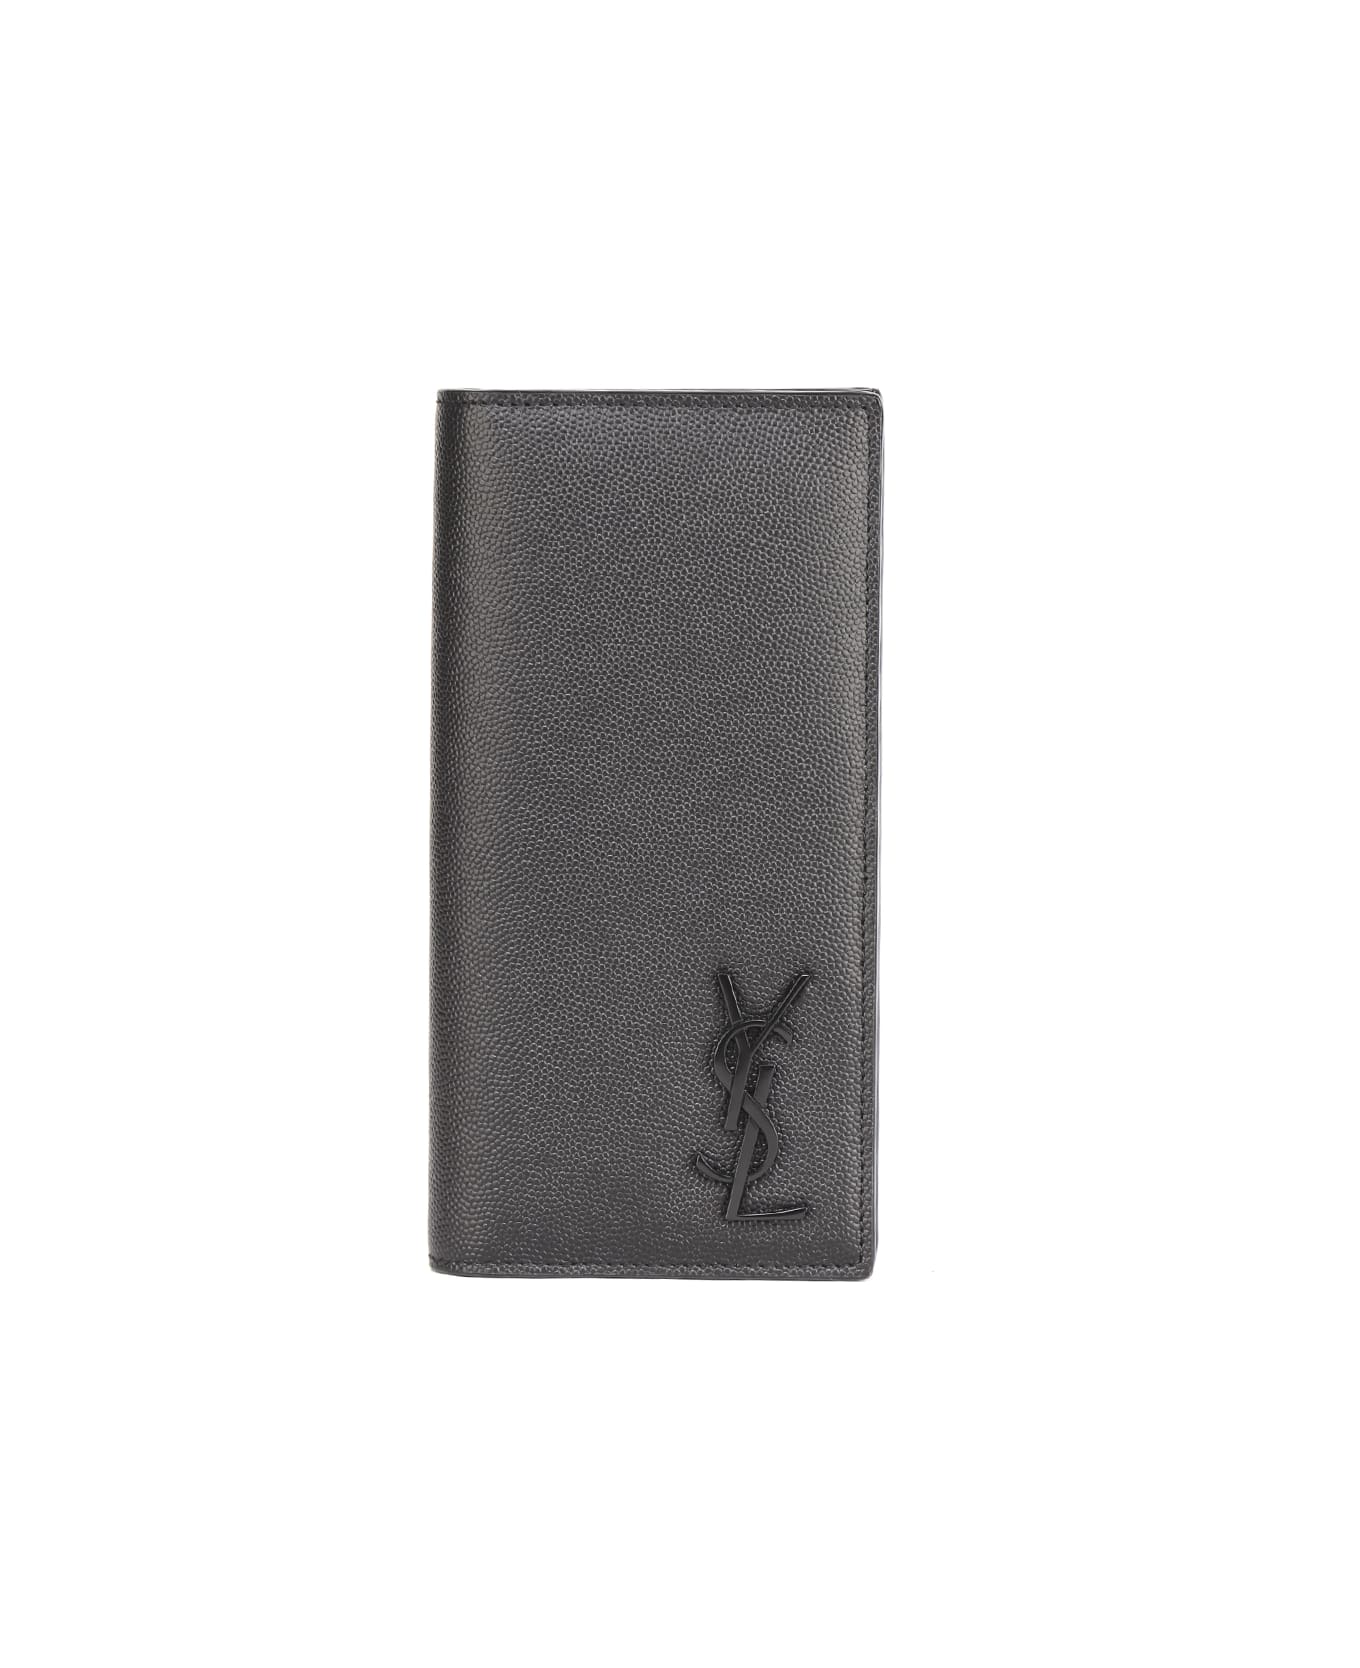 Saint Laurent Monogram Wallet In Grain De Poudre Leather - Black